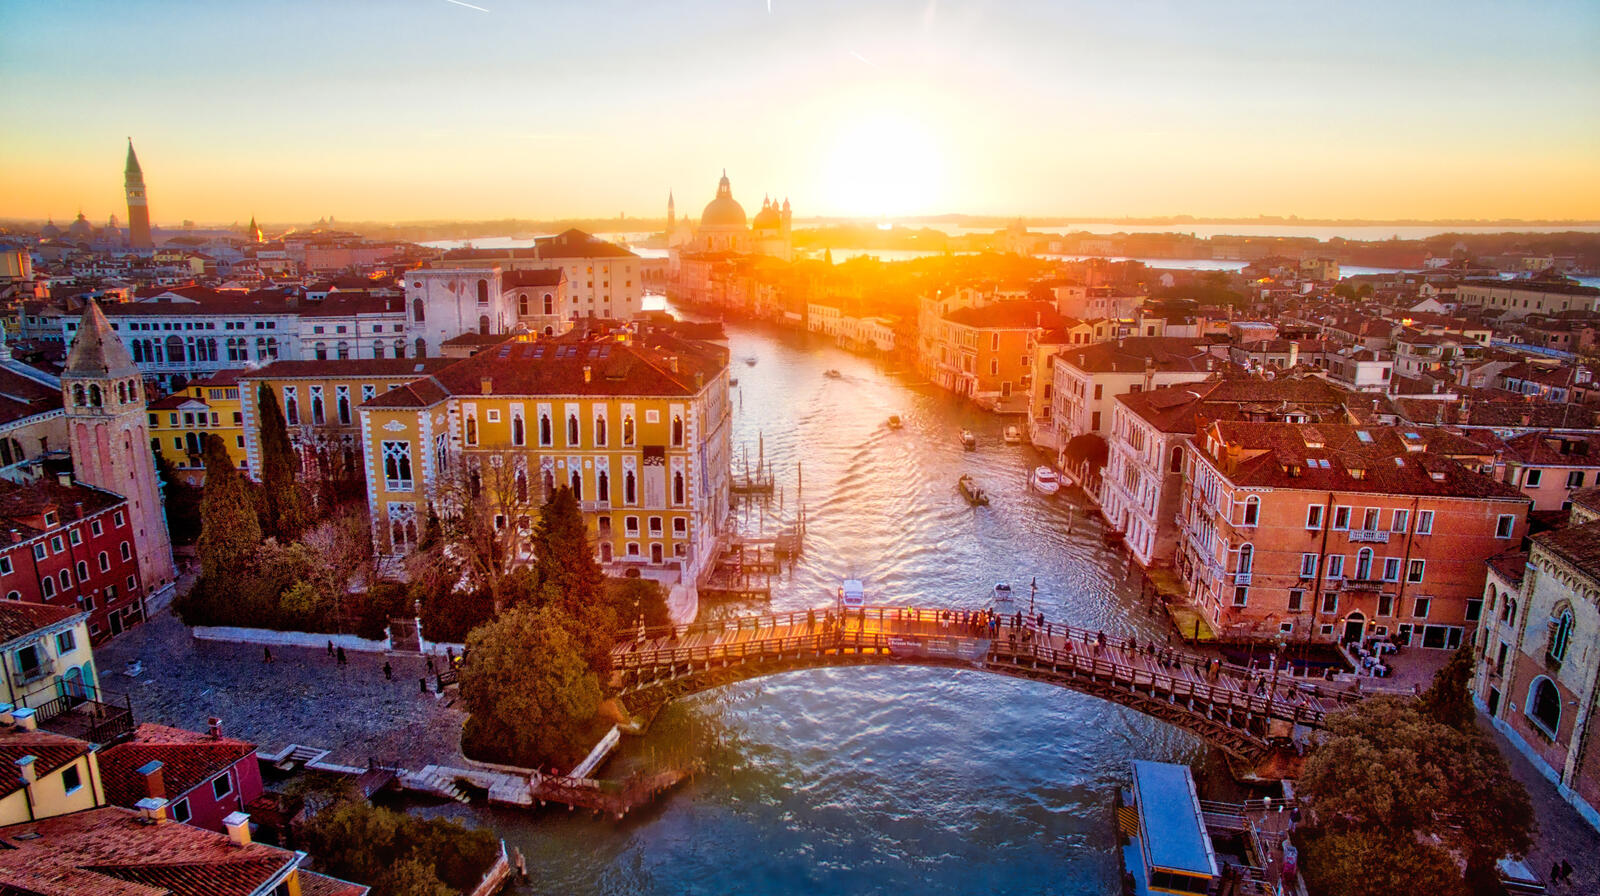 Обои Venice Внеция Италия на рабочий стол